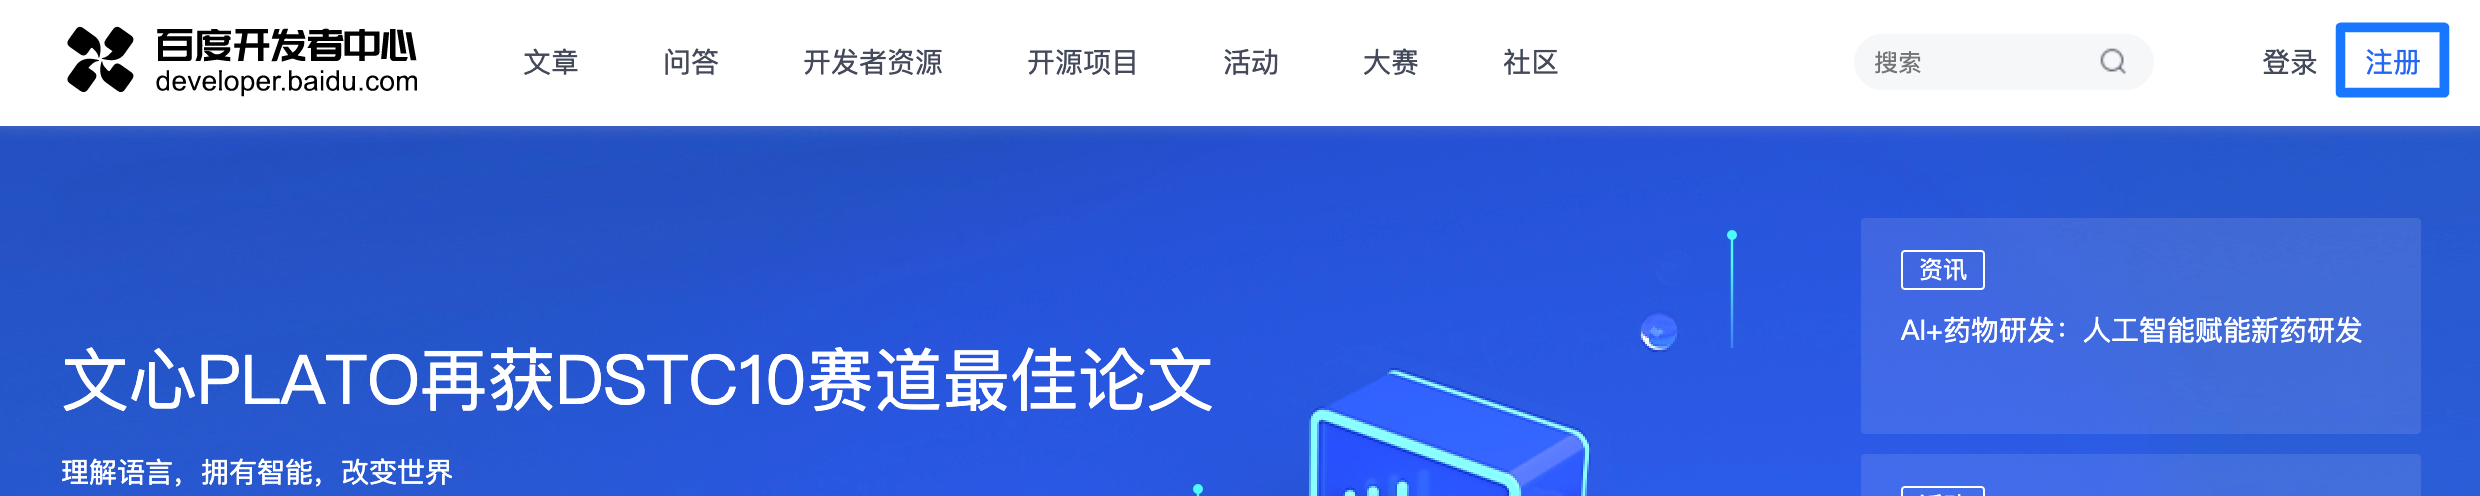 Baidu Developer Portal